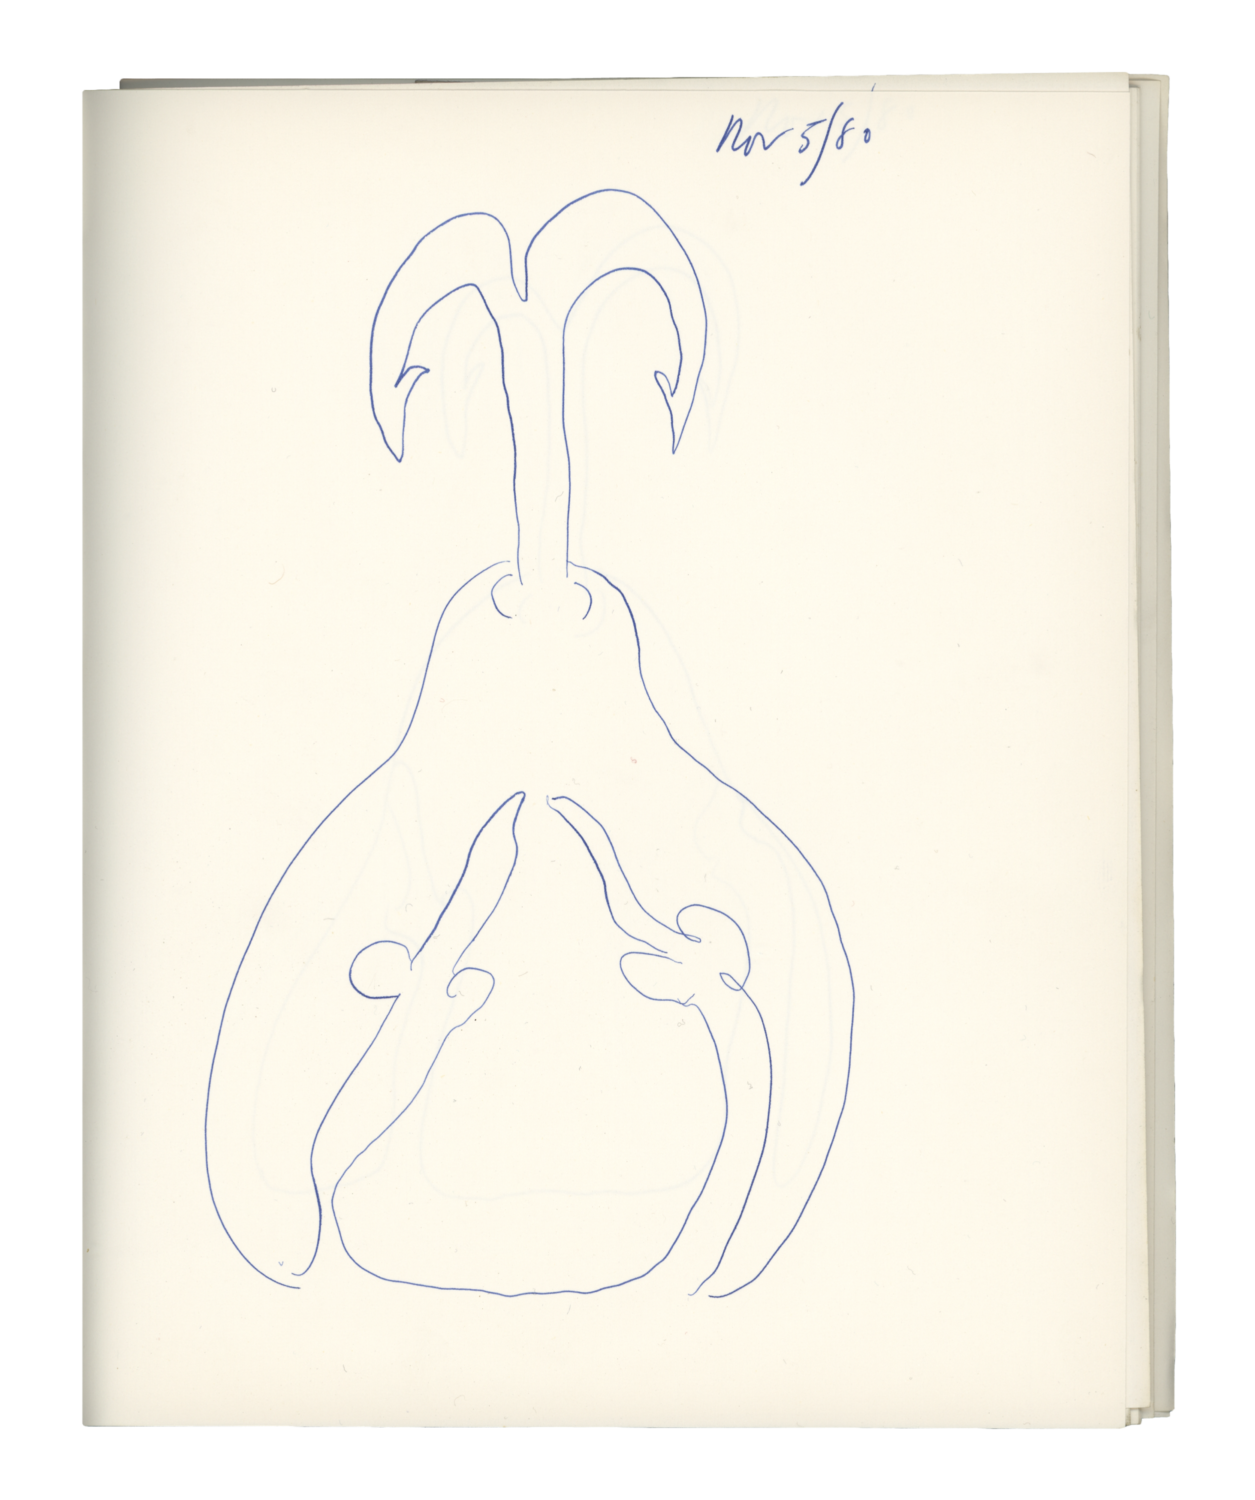 Sketch and notebook (November – December 1980)